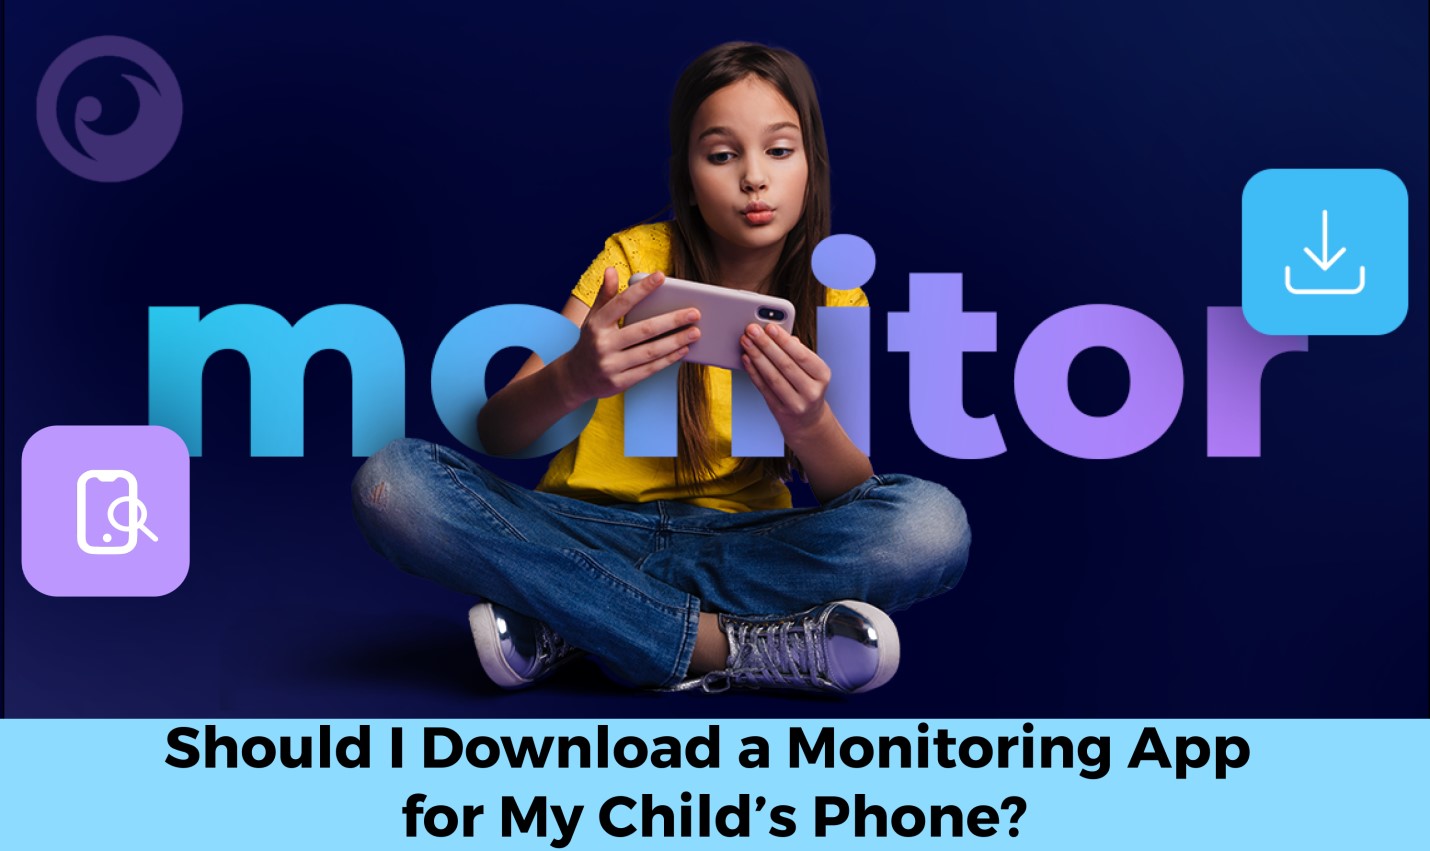 Mám si stáhnout monitorovací aplikaci pro telefon mého dítěte? - obrázek novinky na imei.info